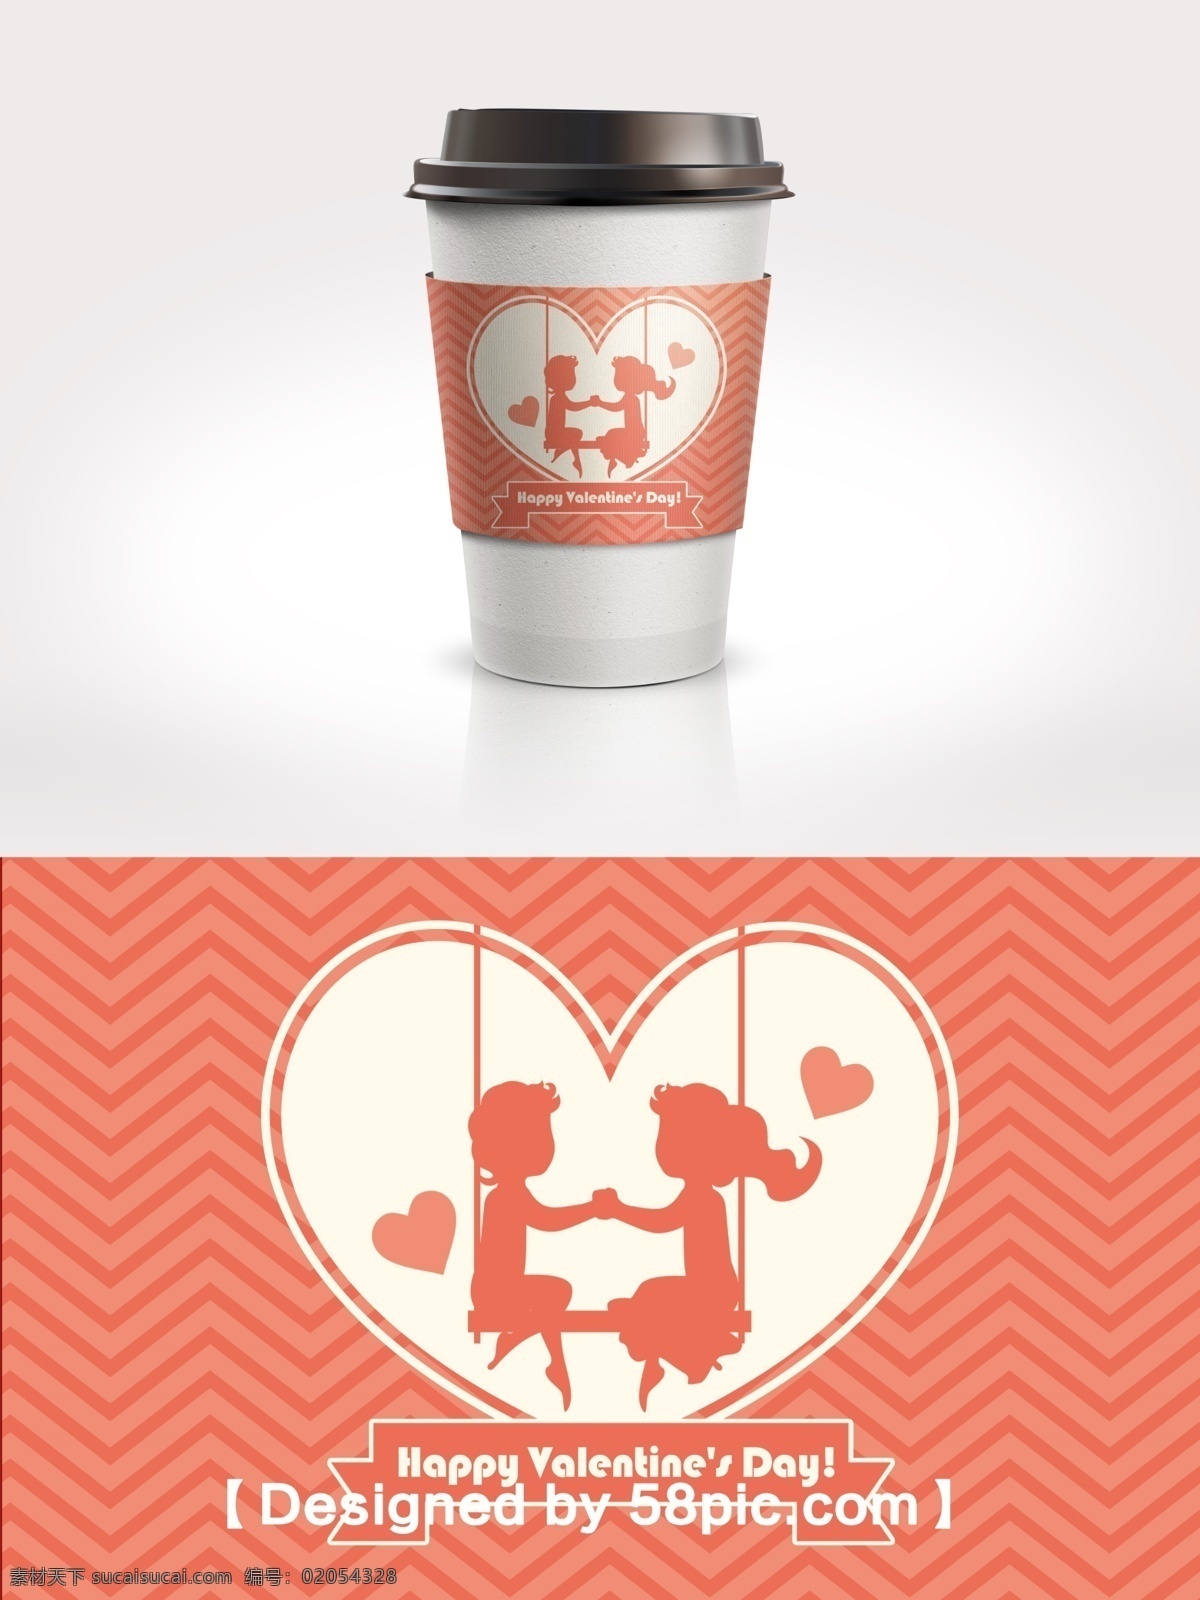 橙色 简约 大气 2.14 情人节 咖啡杯 套 psd素材 广告设计模版 简约大气 节日包装 咖啡杯套设计 情侣 条纹背景